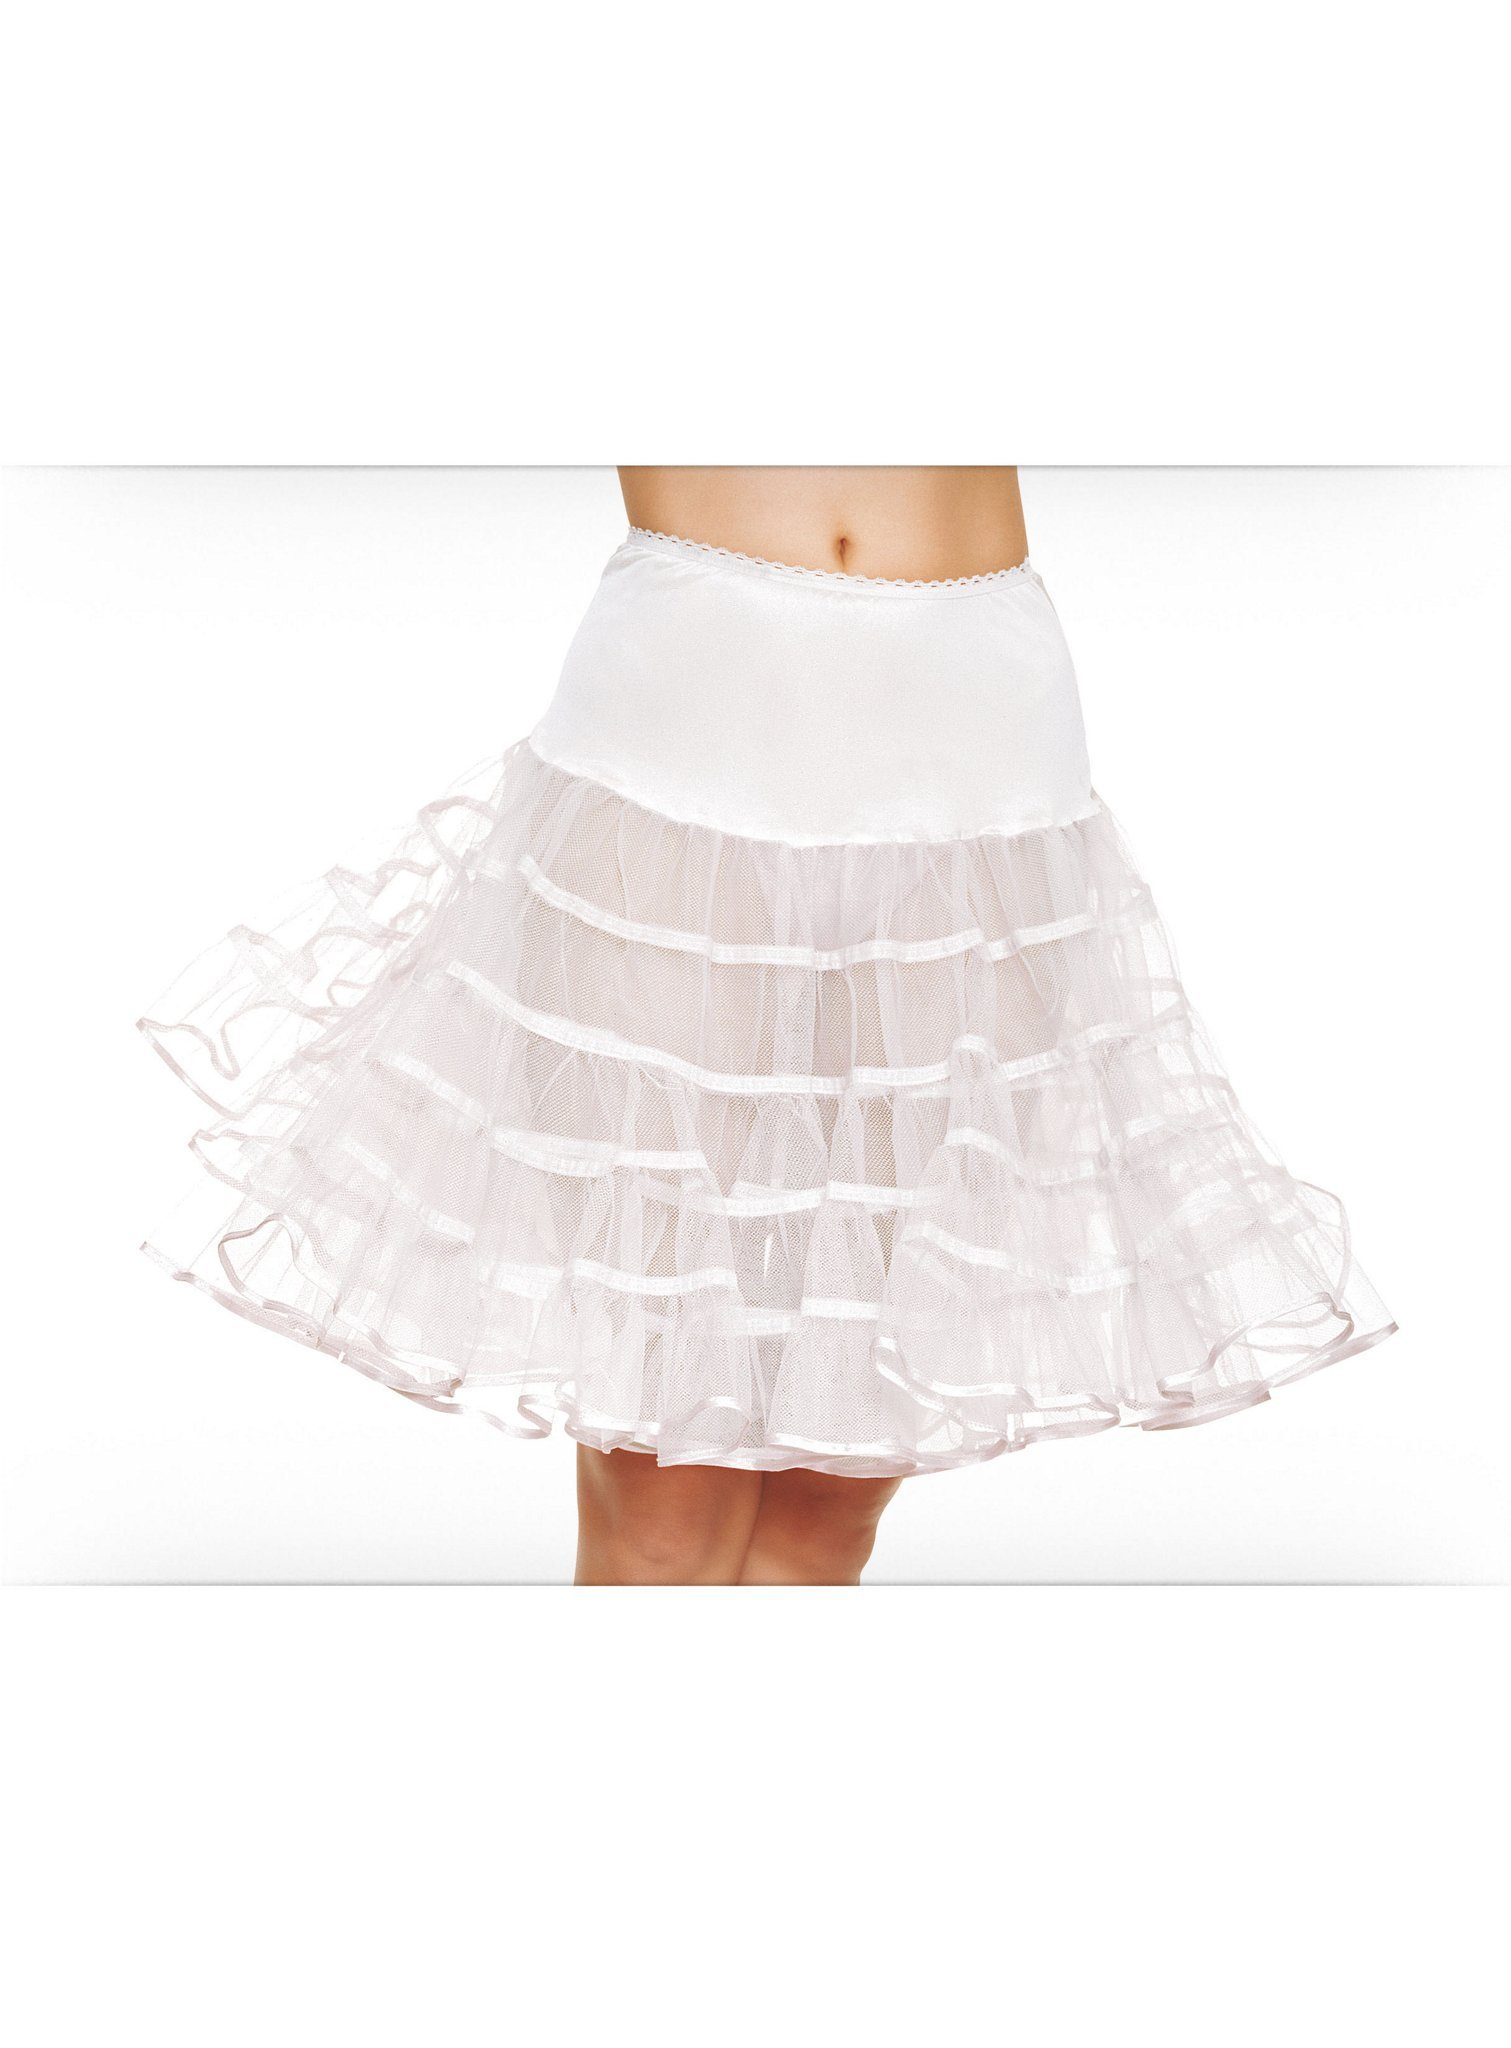 Leg Avenue Kostüm Petticoat mittellang weiß, 50